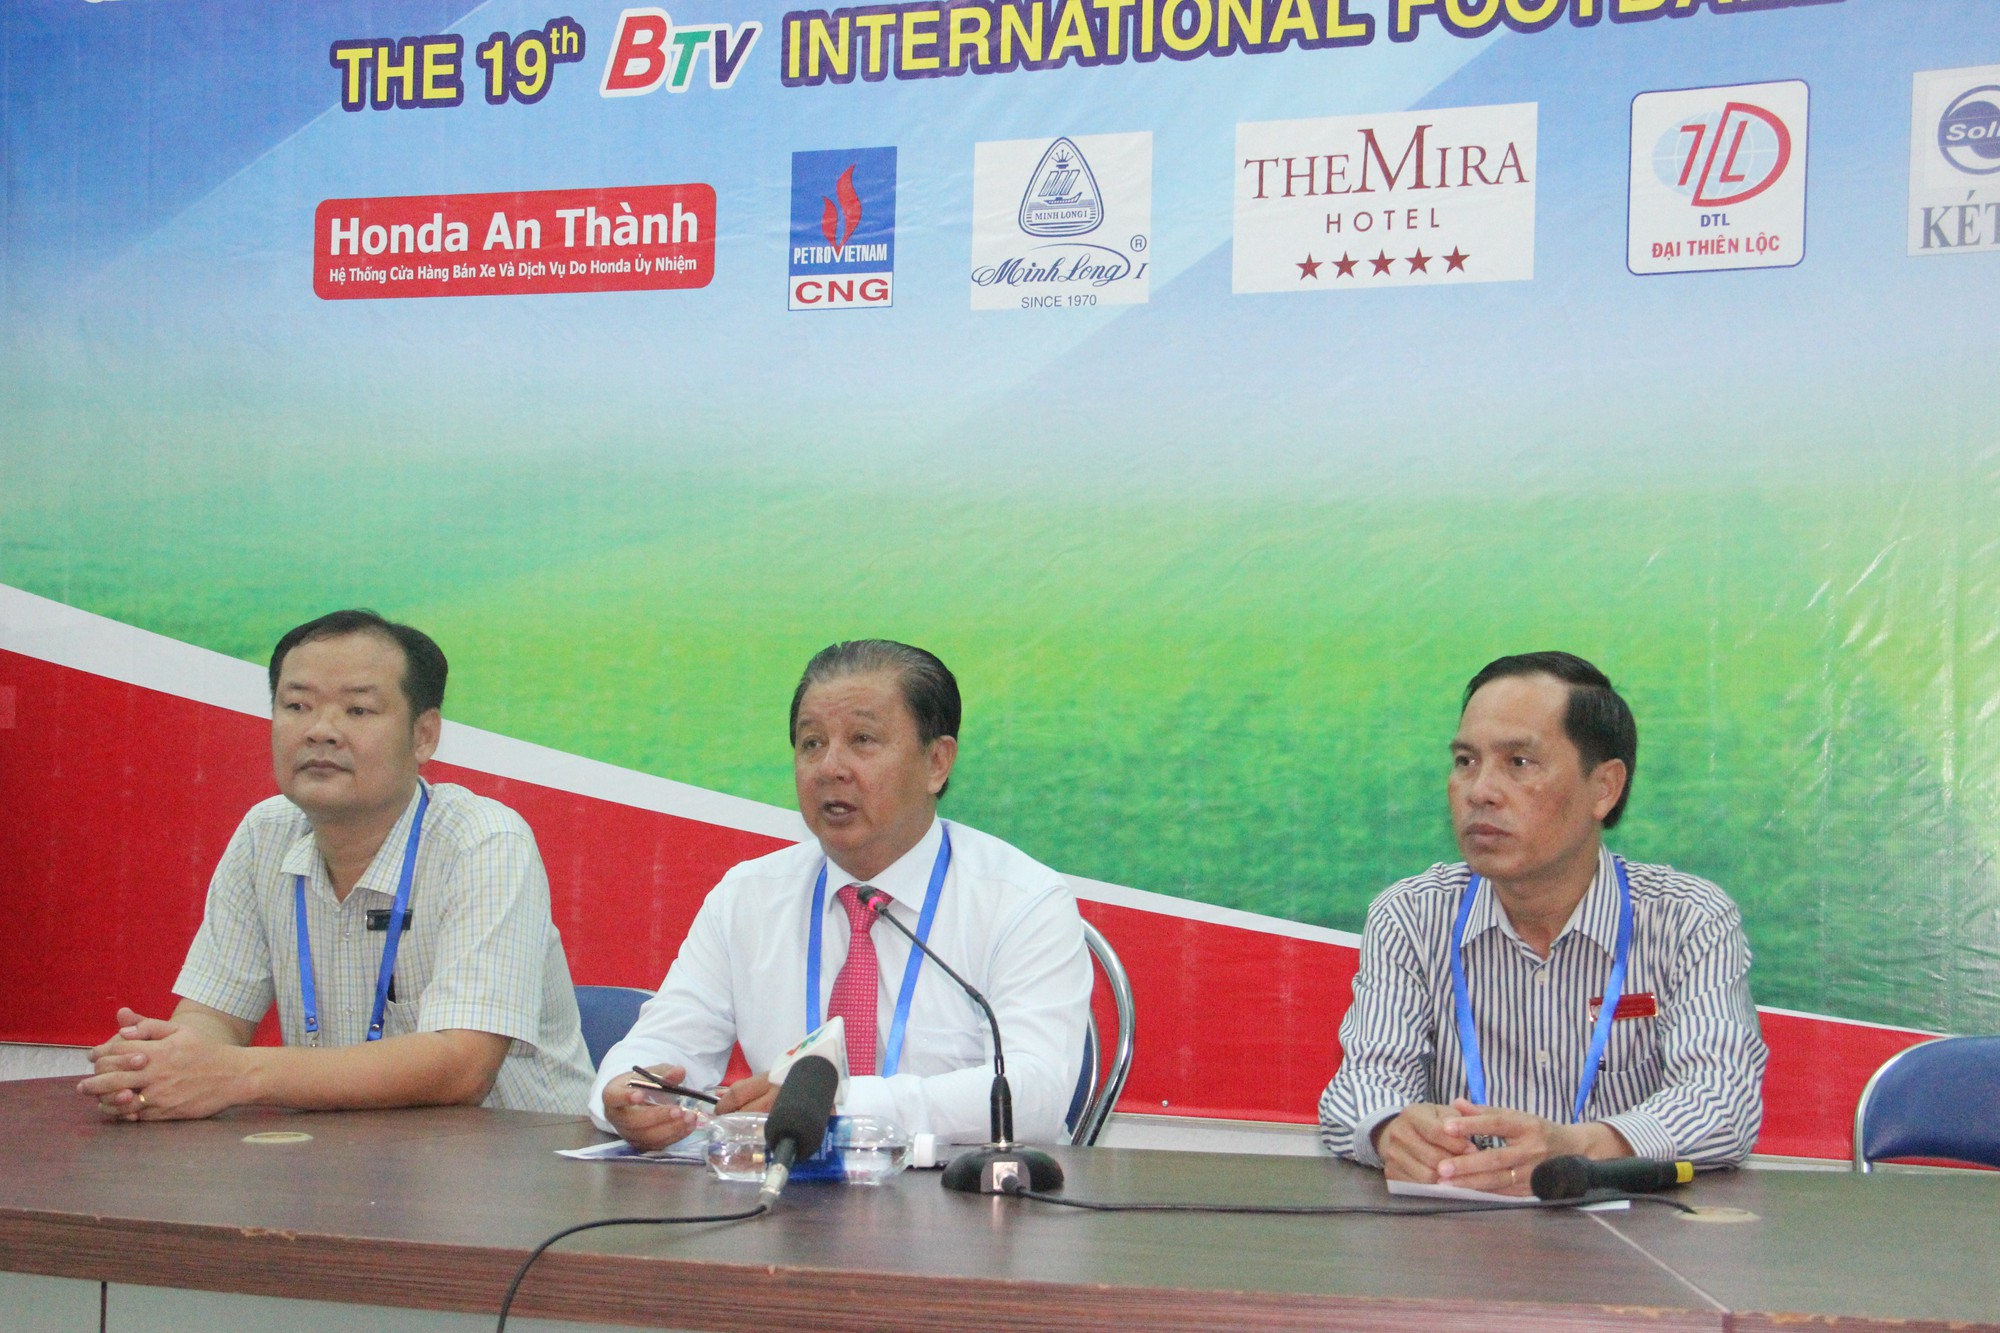 Hai đội khách mời nước ngoài rút lui phút cuối khiến BTV Cup “lao đao”  - Ảnh 2.